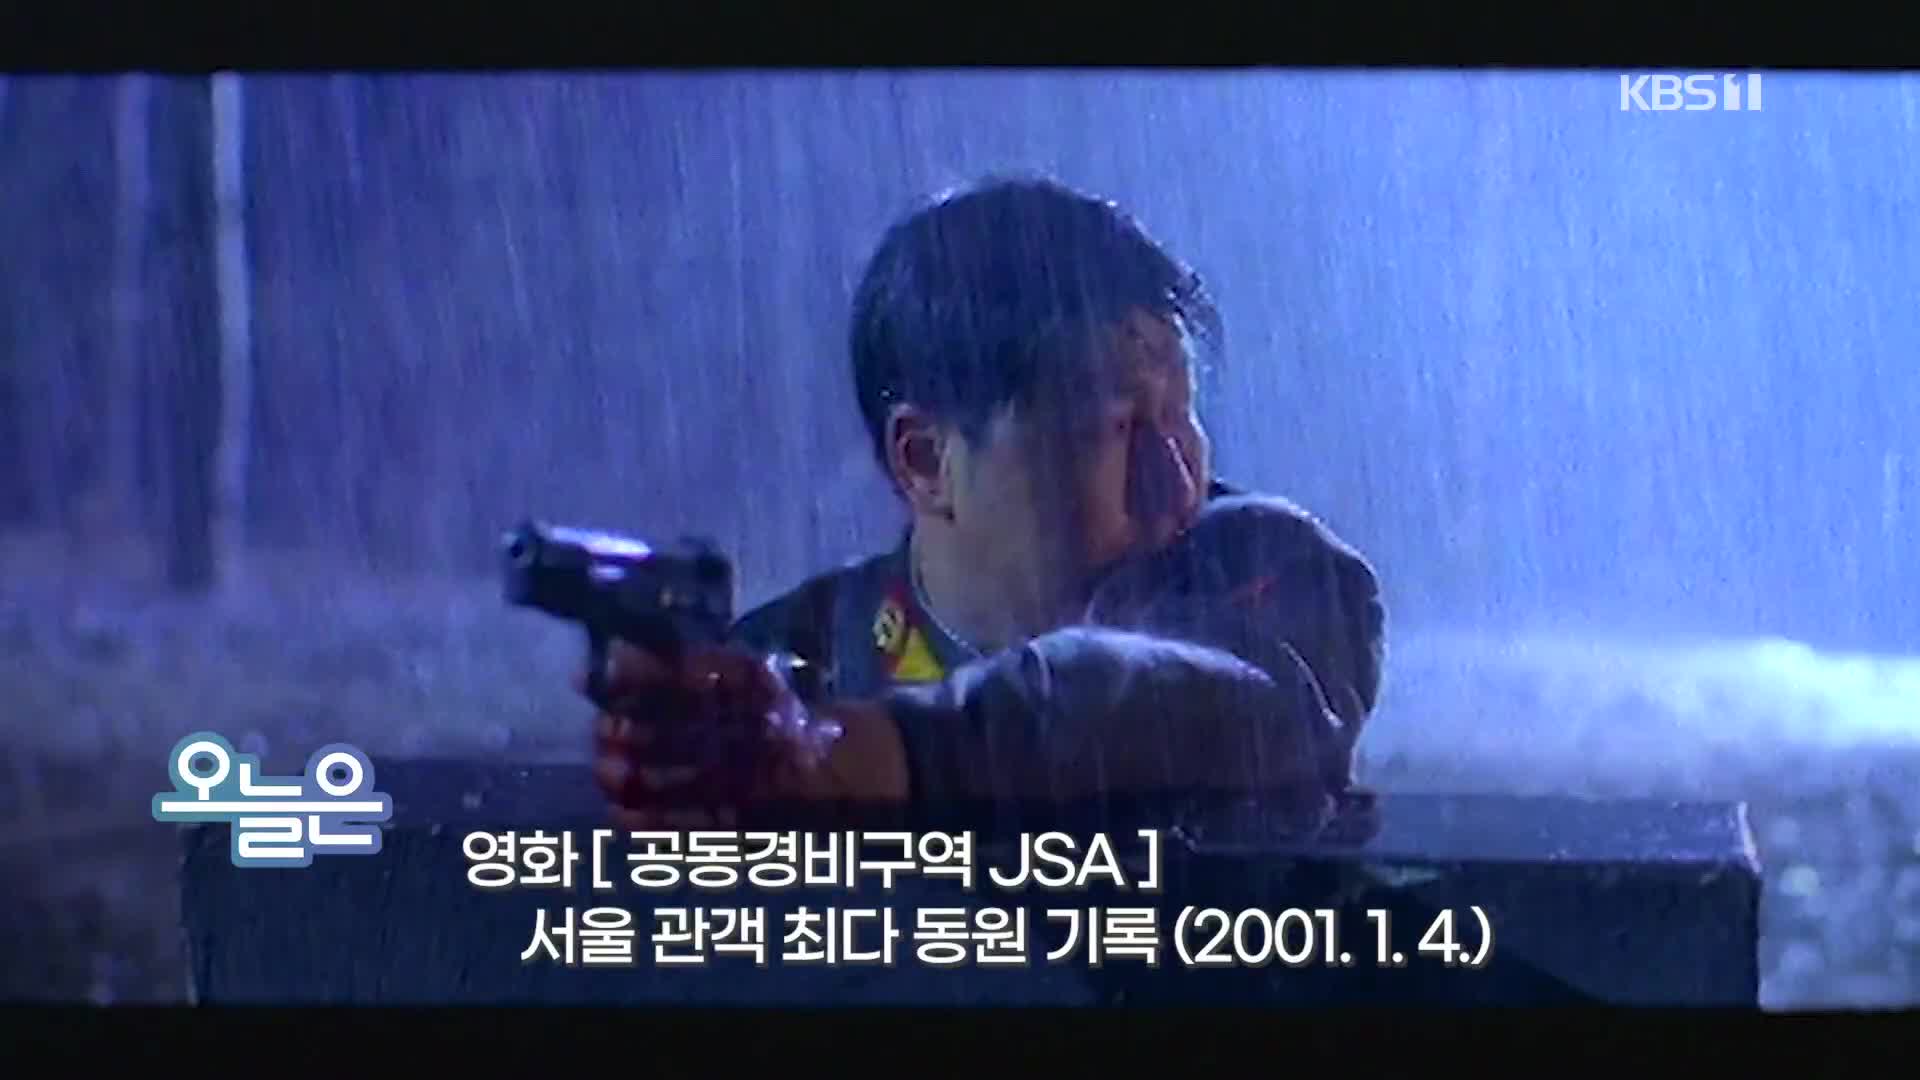 [오늘은] 영화 ‘공동경비구역 JSA’ 서울 관객 최다 동원 기록 (2001.1.4.)